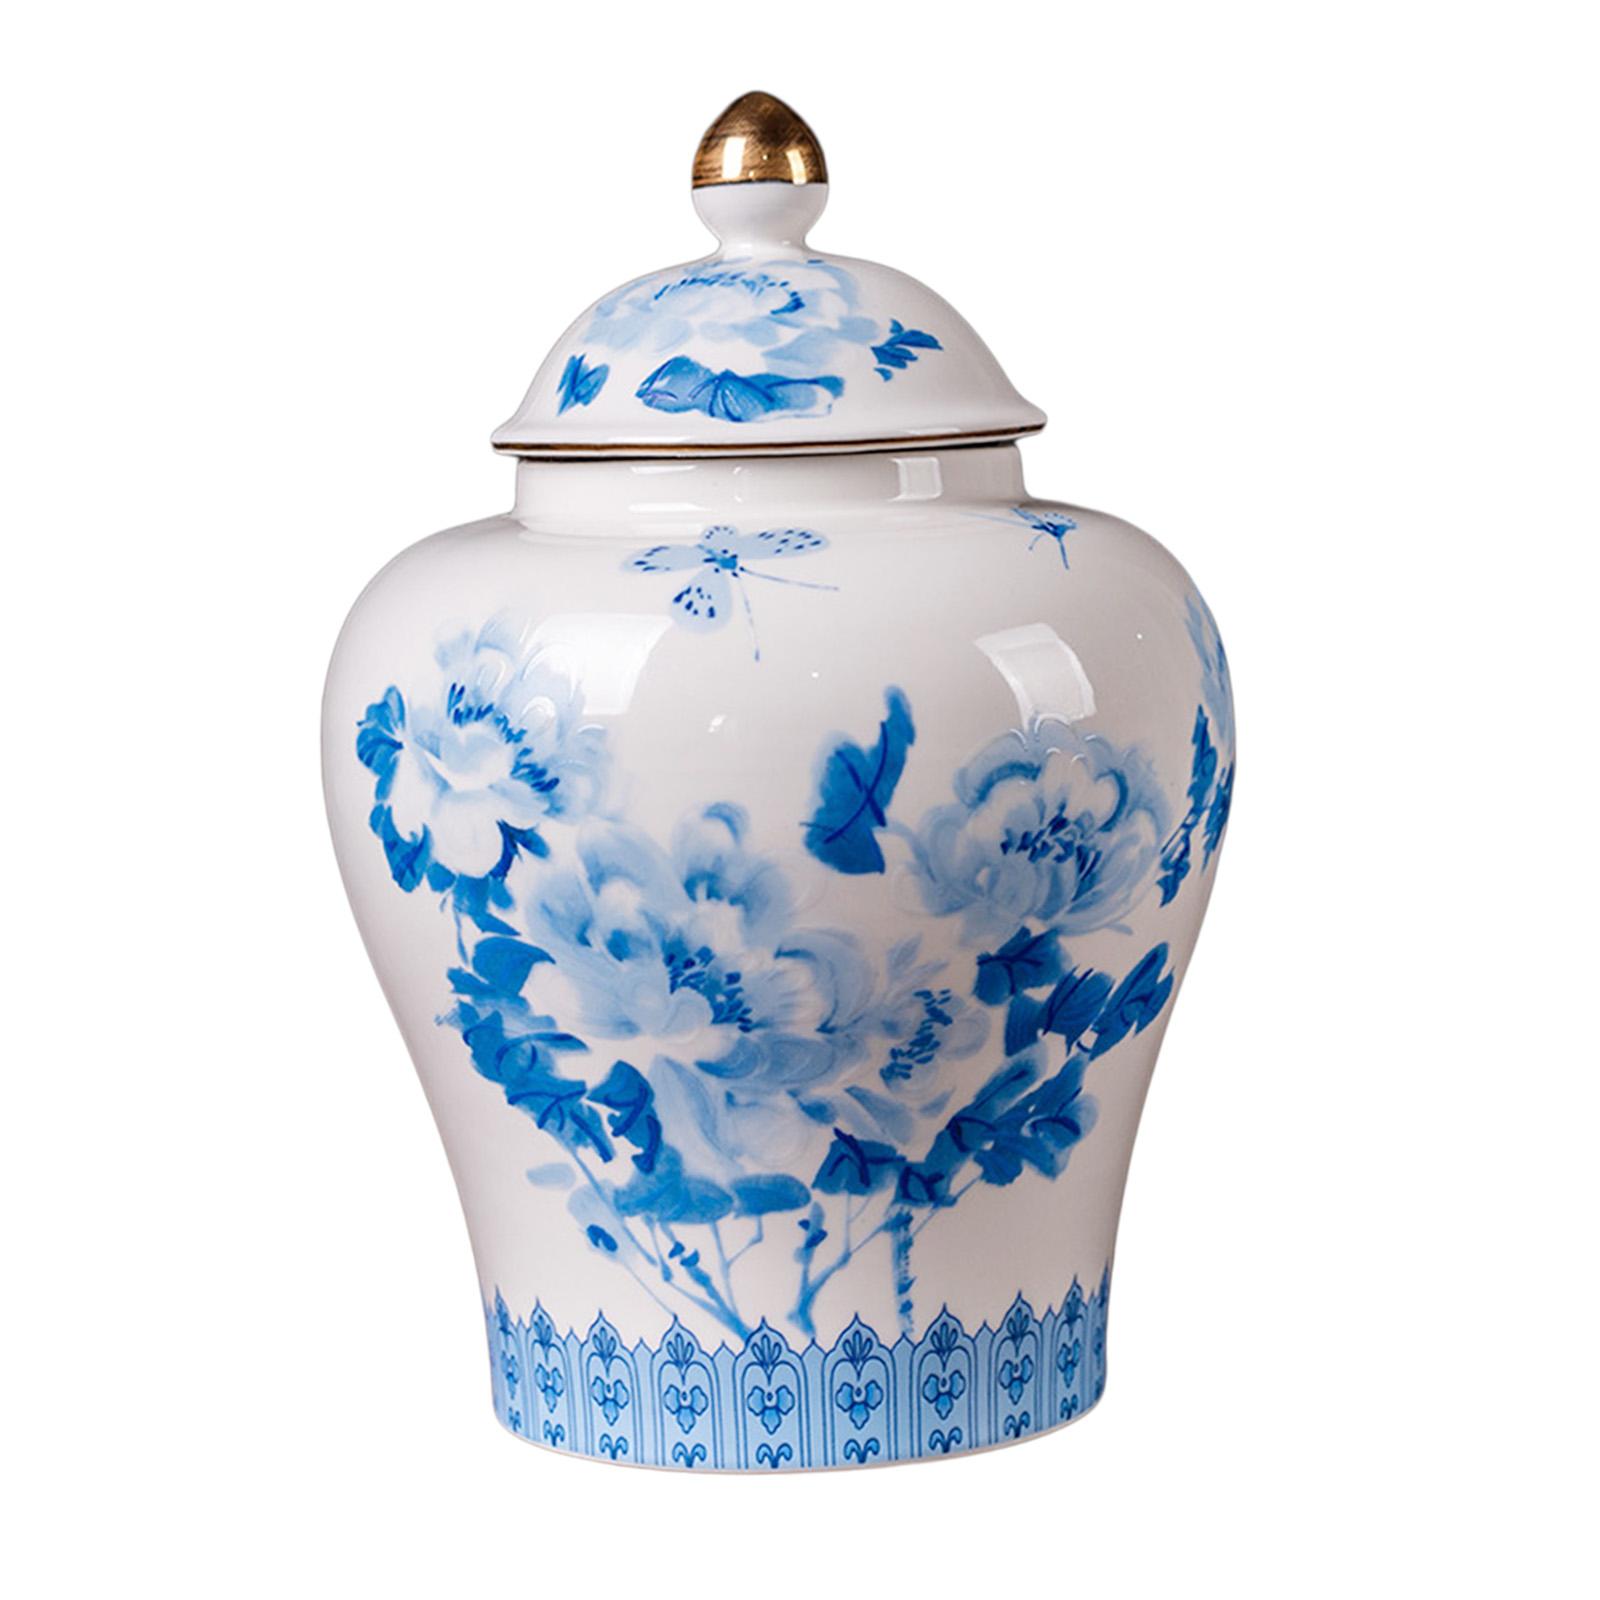 Classical Ceramic Ginger Jar Floral Blue & White Porcelain Jar with Lid